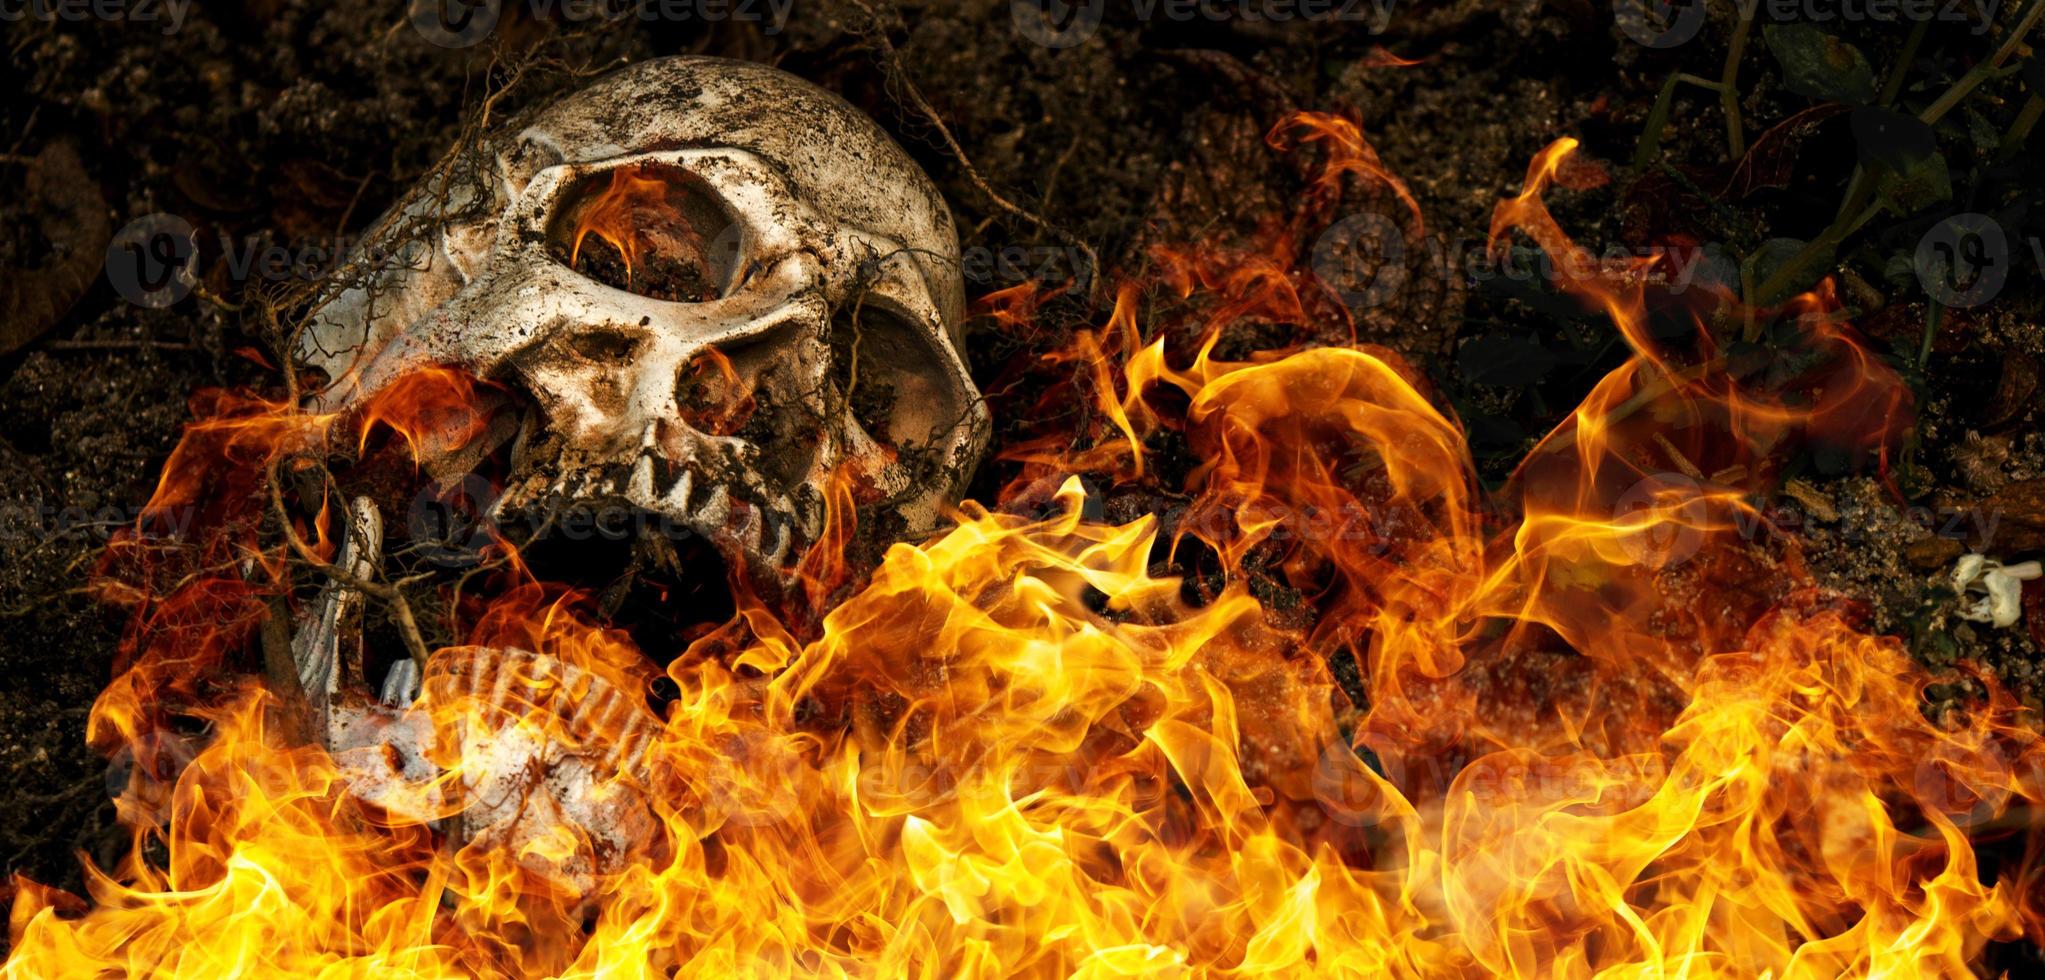 devant un crâne humain enterré en feu dans le sol avec les racines de l'arbre sur le côté. le crâne a de la saleté attachée au crâne.concept de mort et d'halloween photo